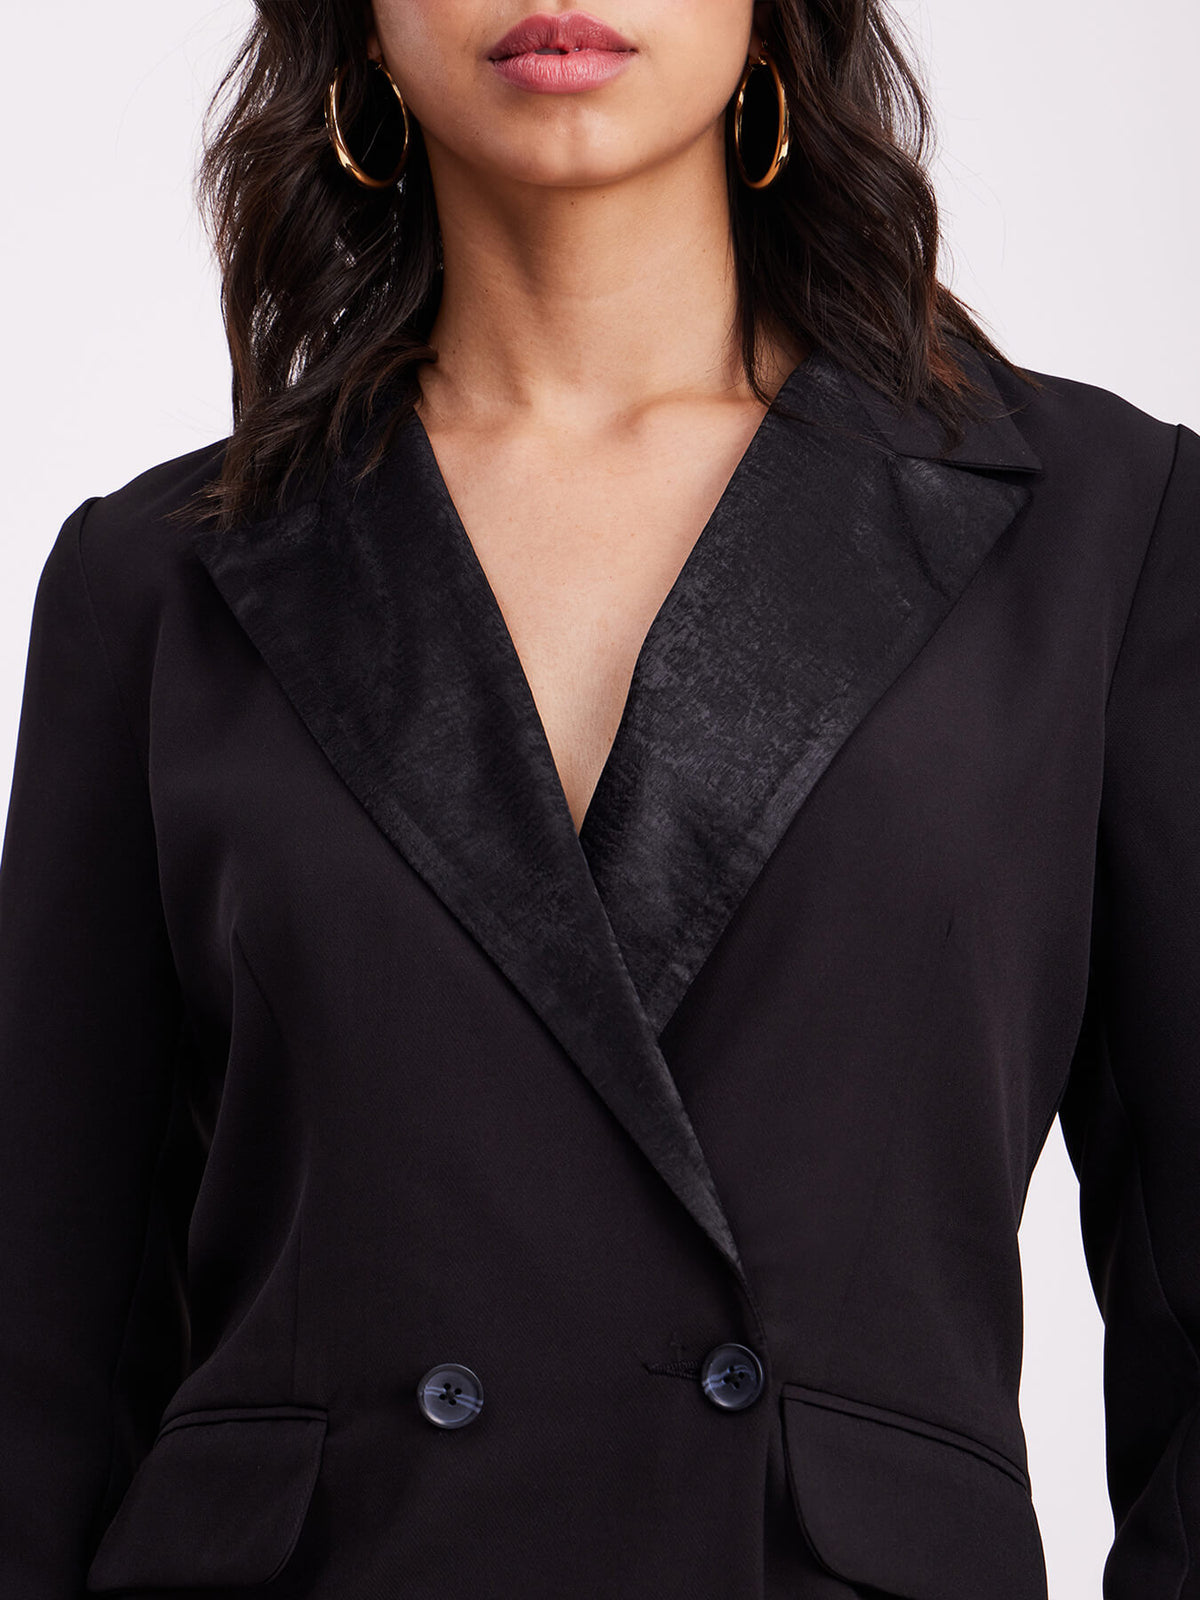 Satin Collar Blazer Dress - Black